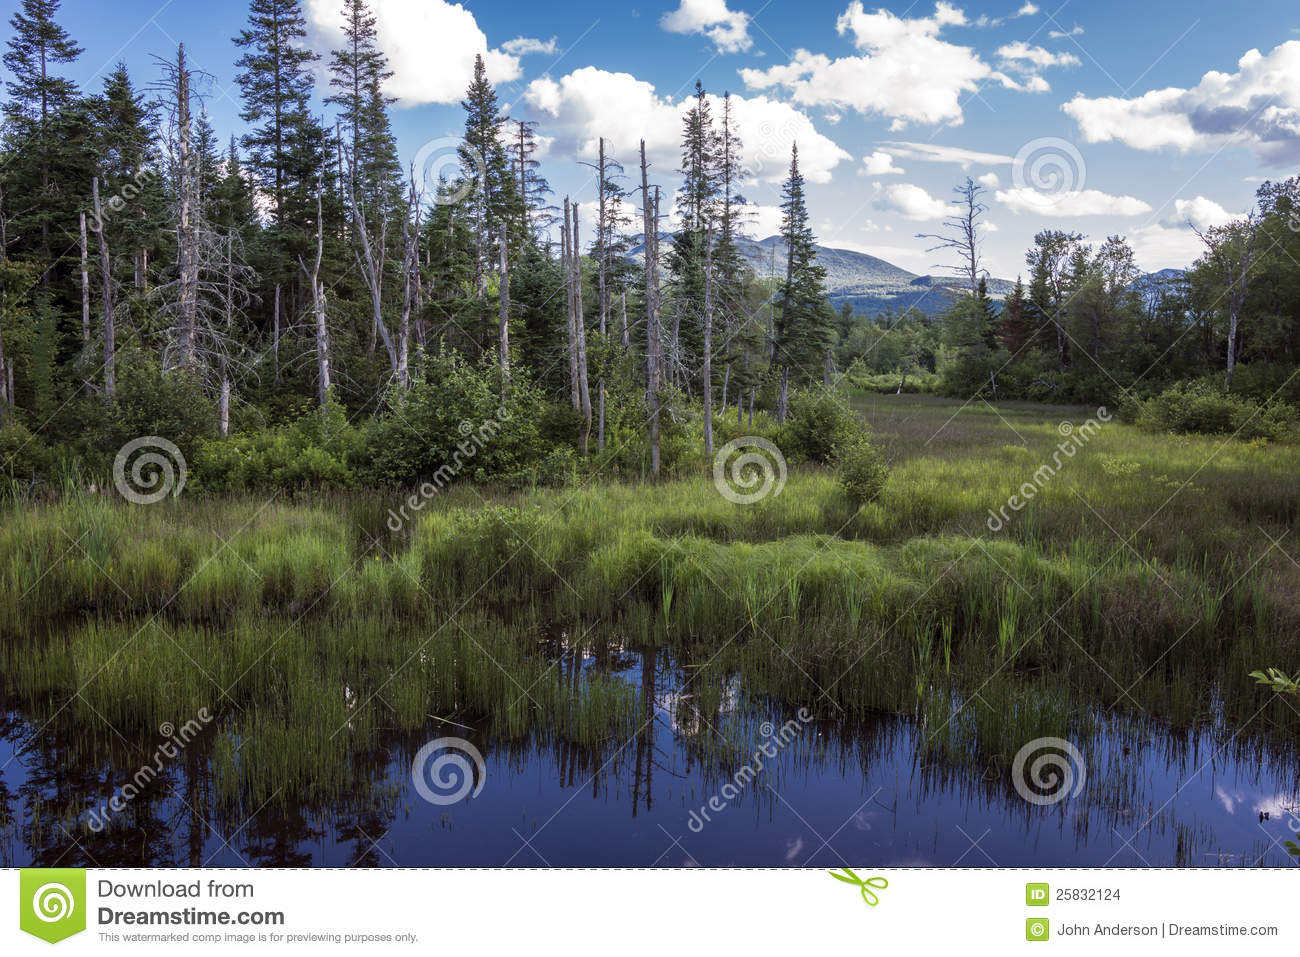 Best ideas about New Hampshire Landscape
. Save or Pin New Hampshire Landscape stock photo Image of plants Now.